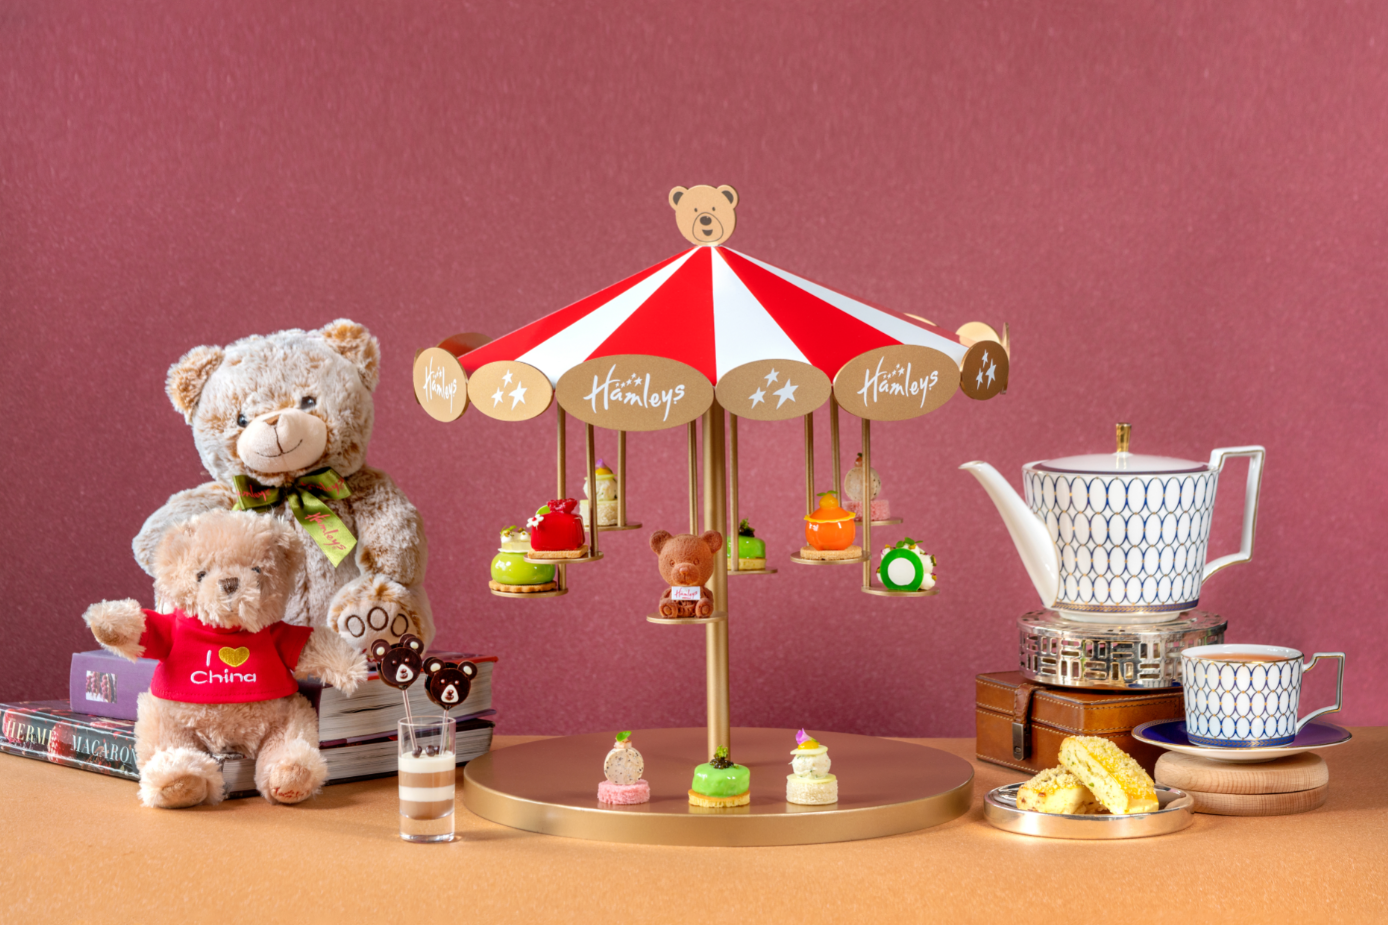 海口丽思卡尔顿酒店与百年英国玩具品牌HAMLEYS哈姆雷斯 联合打造“星光乐园”哈姆熊主题下午茶